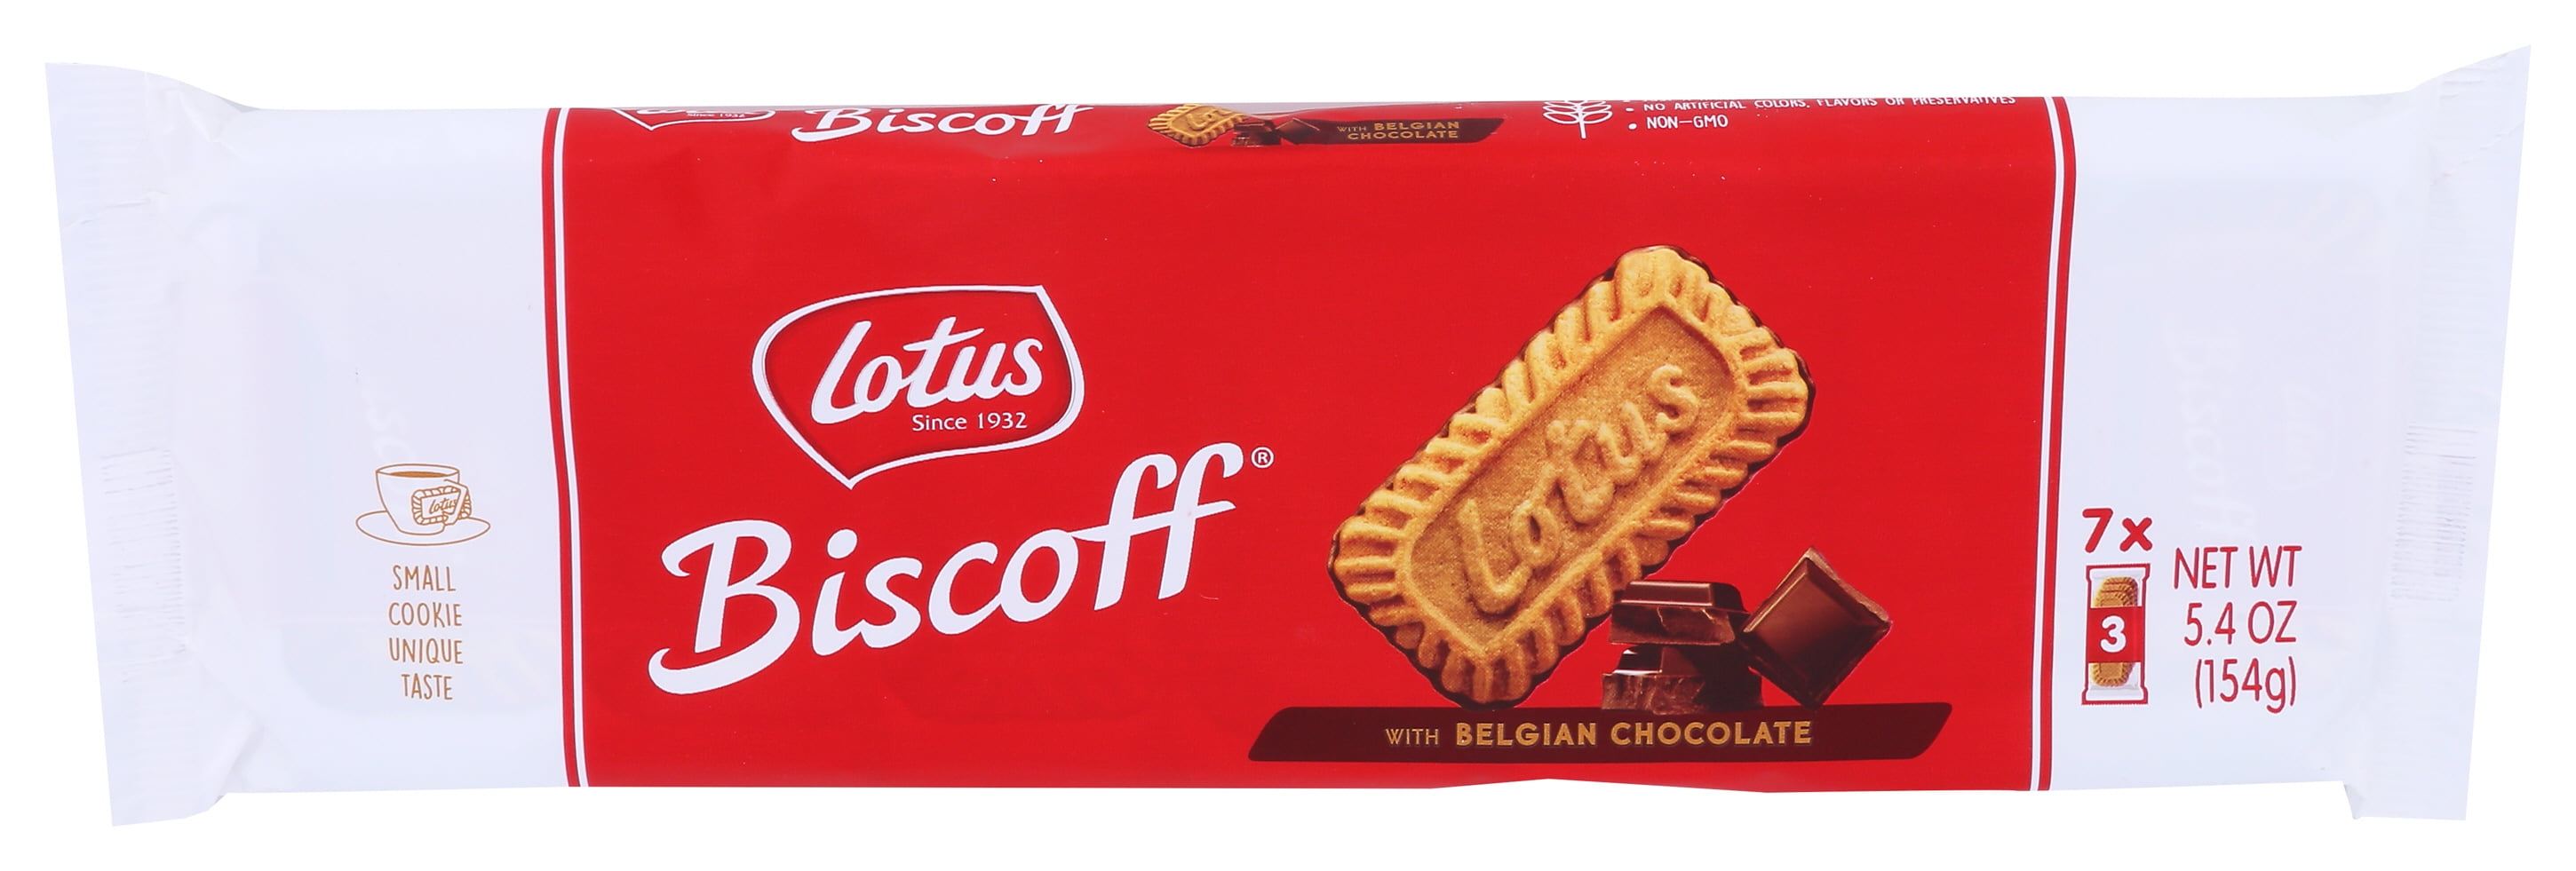 Lotus Biscoff Cookie, 20 Packs - 20 packs, 17.6 oz